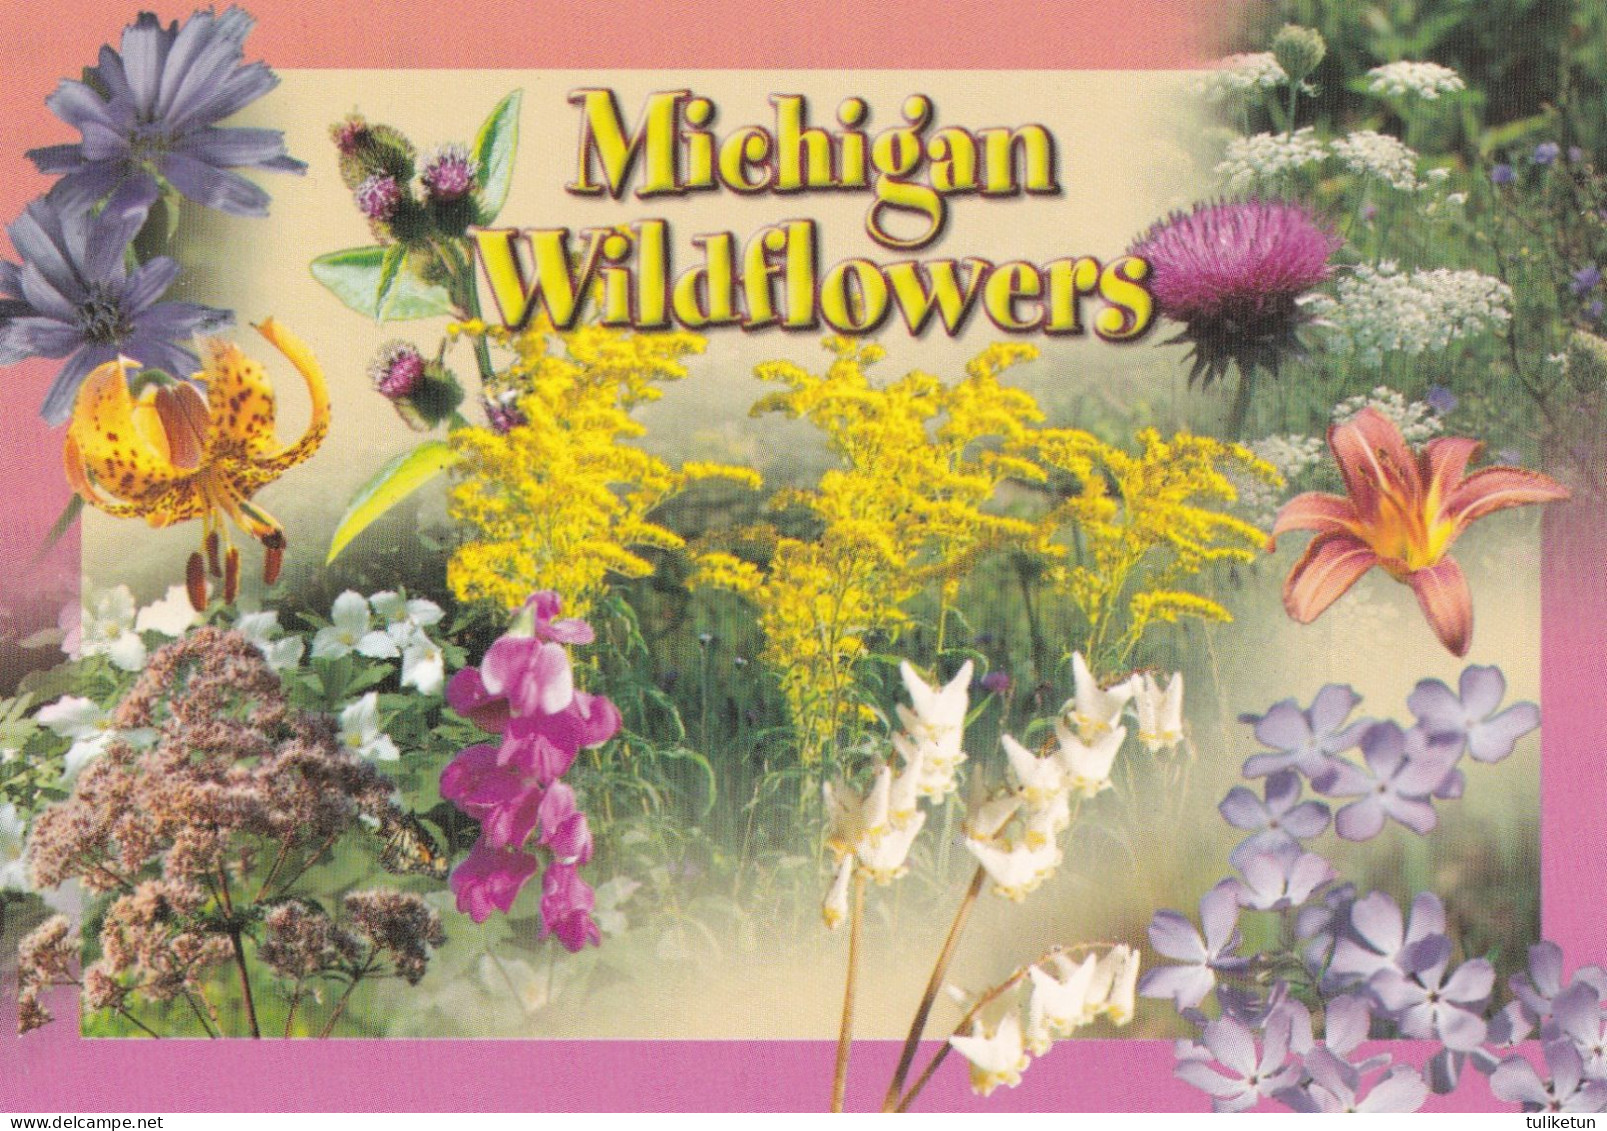 Michigan Wildflowers - Insekten